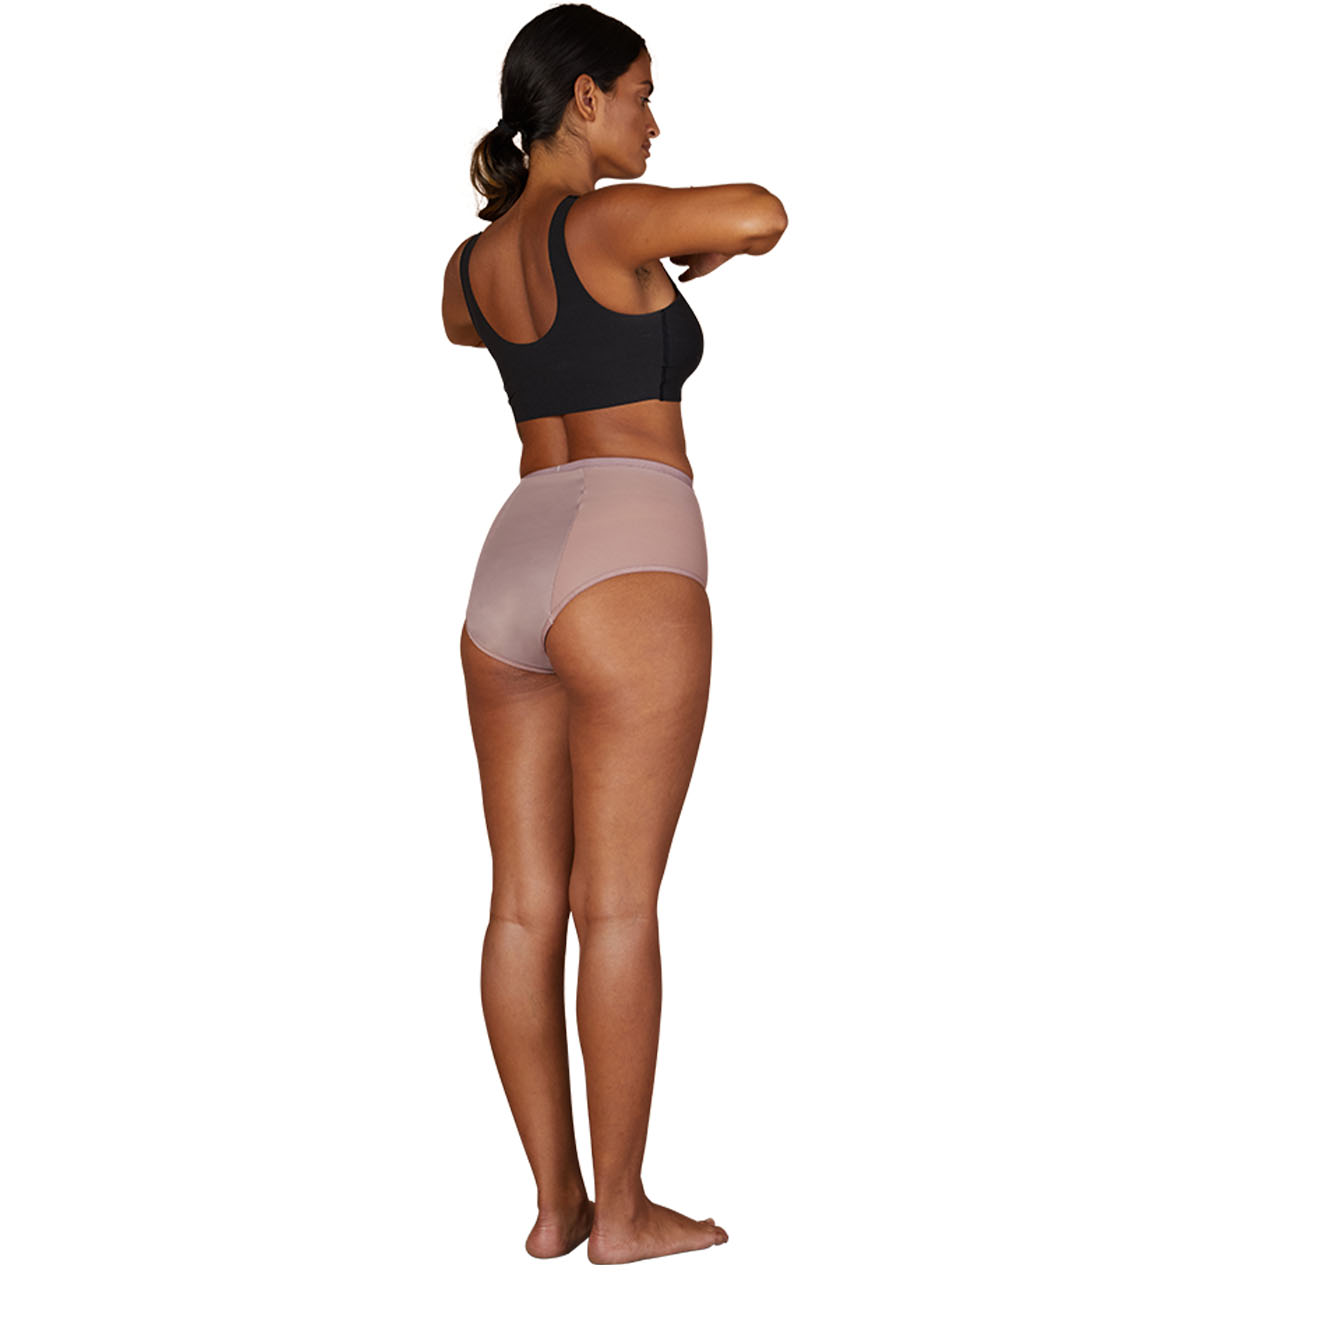 Thinx For All Women's Super Absorbency High-waist Briefs Period Underwear -  Plum Purple S : Target